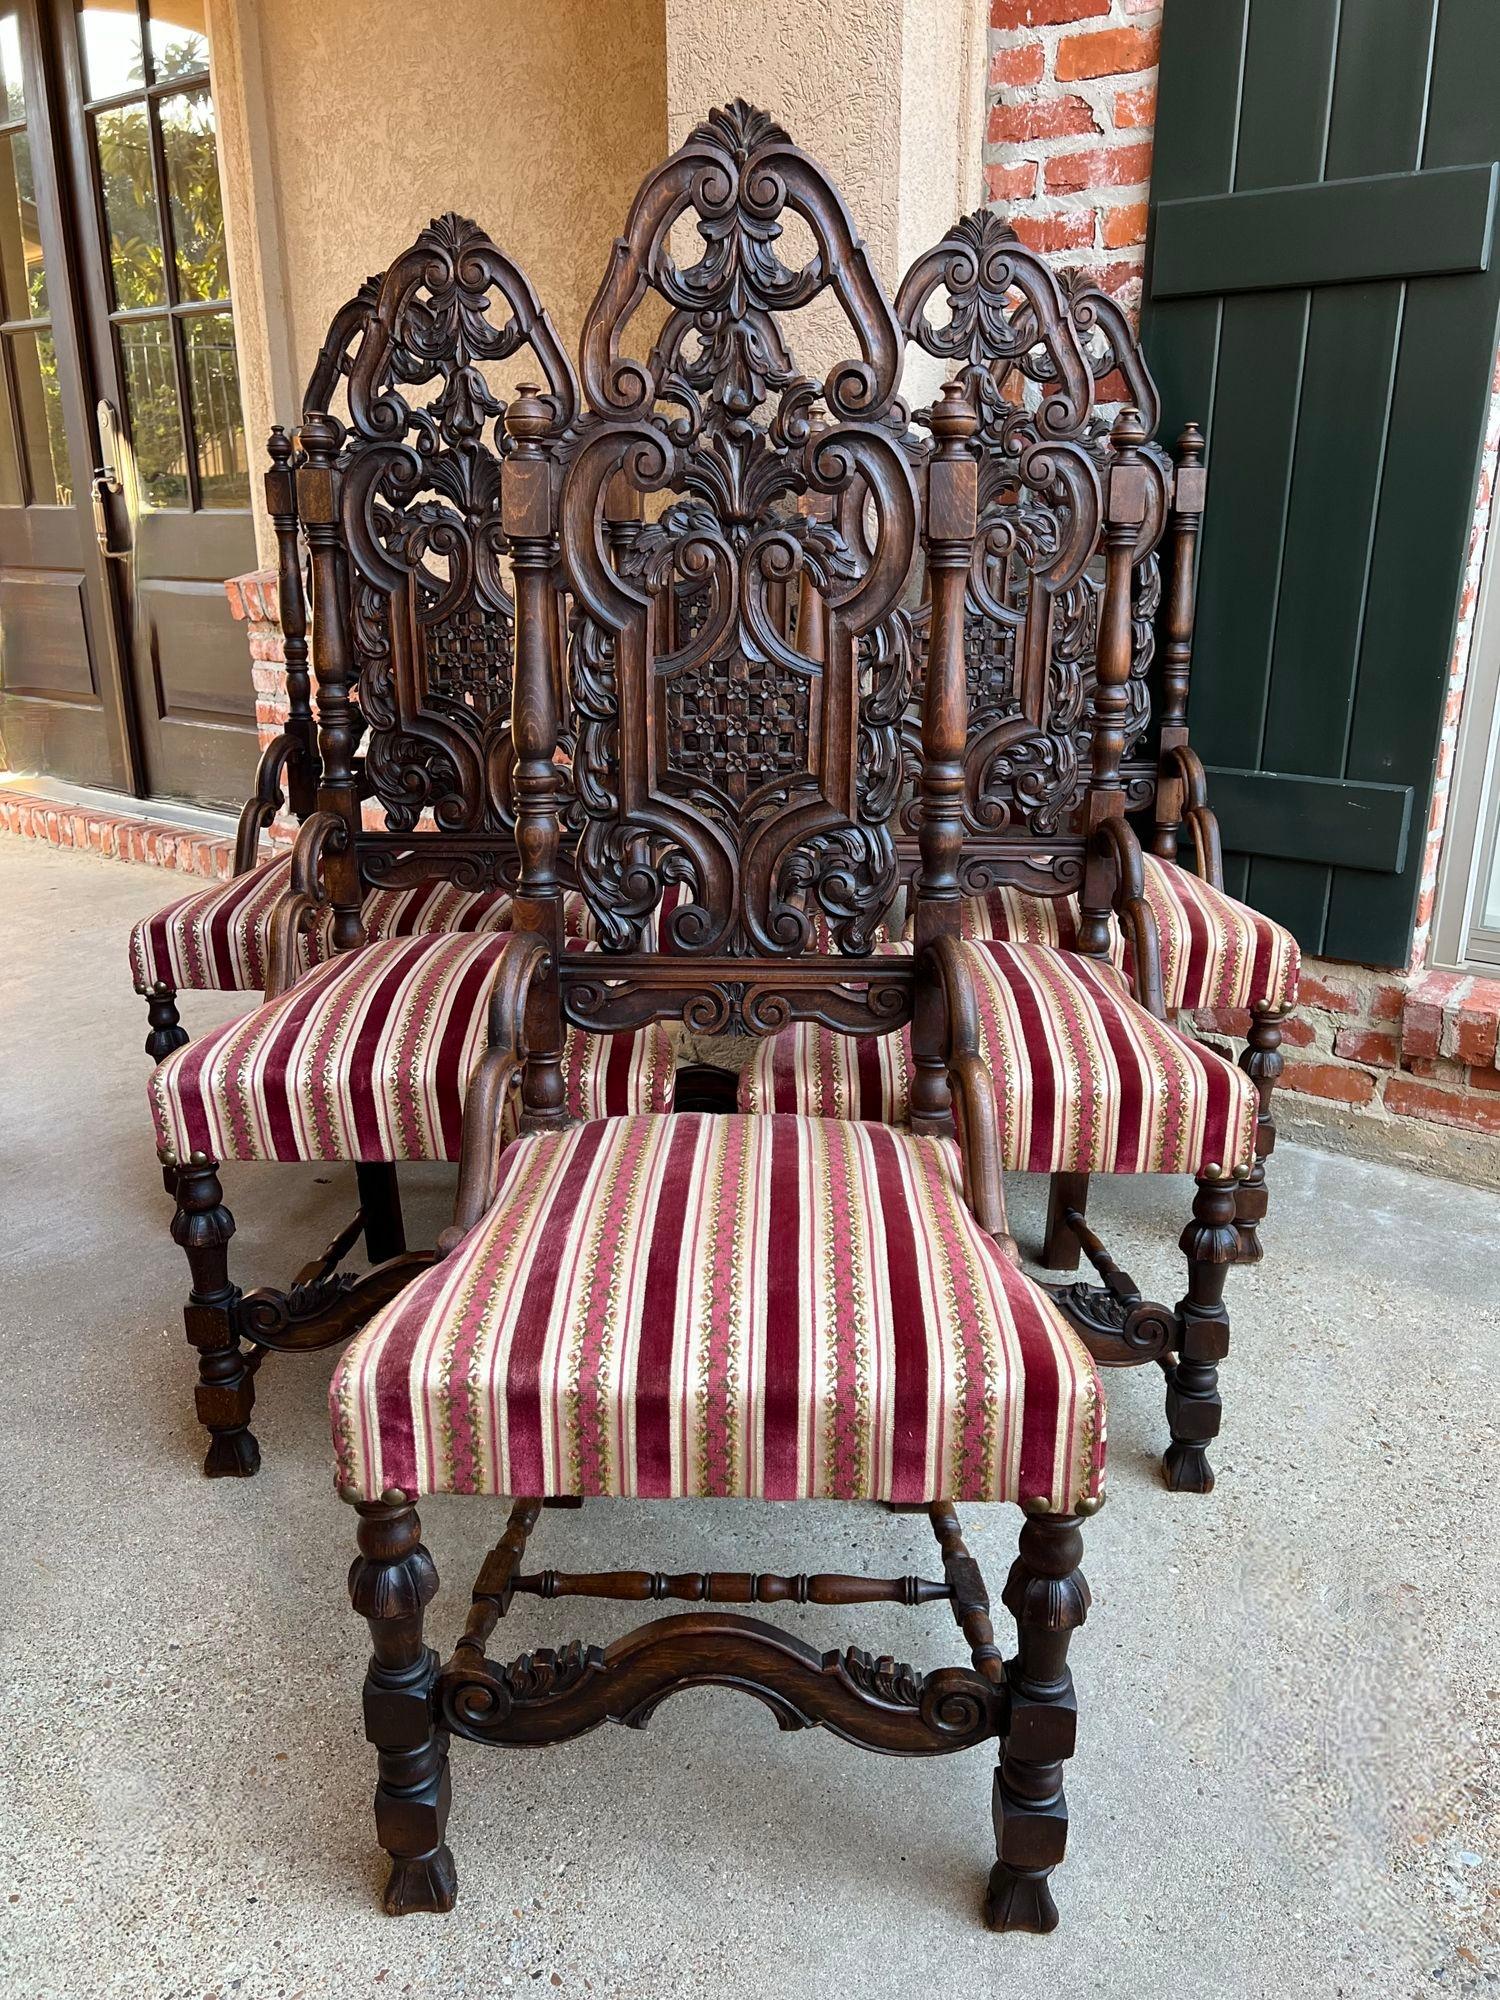 Ensemble de 6 chaises de salle à manger françaises anciennes Renaissance Revival Tall Open Carved Oak.

En provenance directe de France, un superbe ensemble de SIX chaises de salle à manger anciennes ! Les chaises ont une apparence majestueuse avec